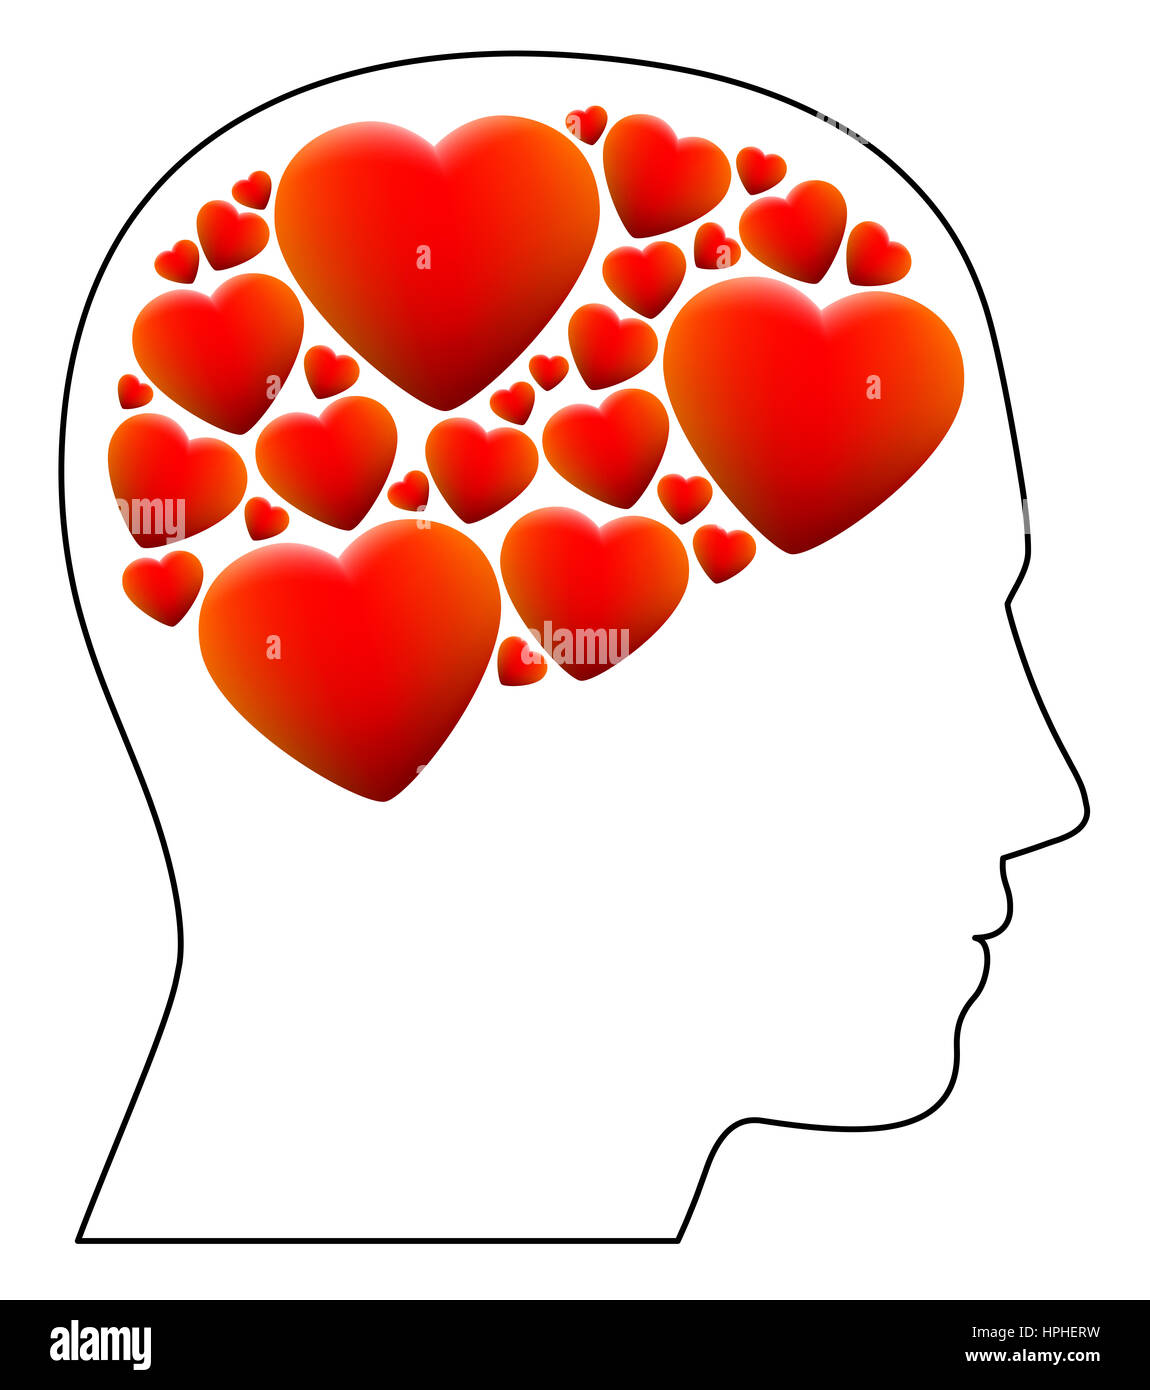 Tombée en amour - symbolisé par une tête pleine de coeurs au lieu de cerveau - illustration sur fond blanc. Banque D'Images